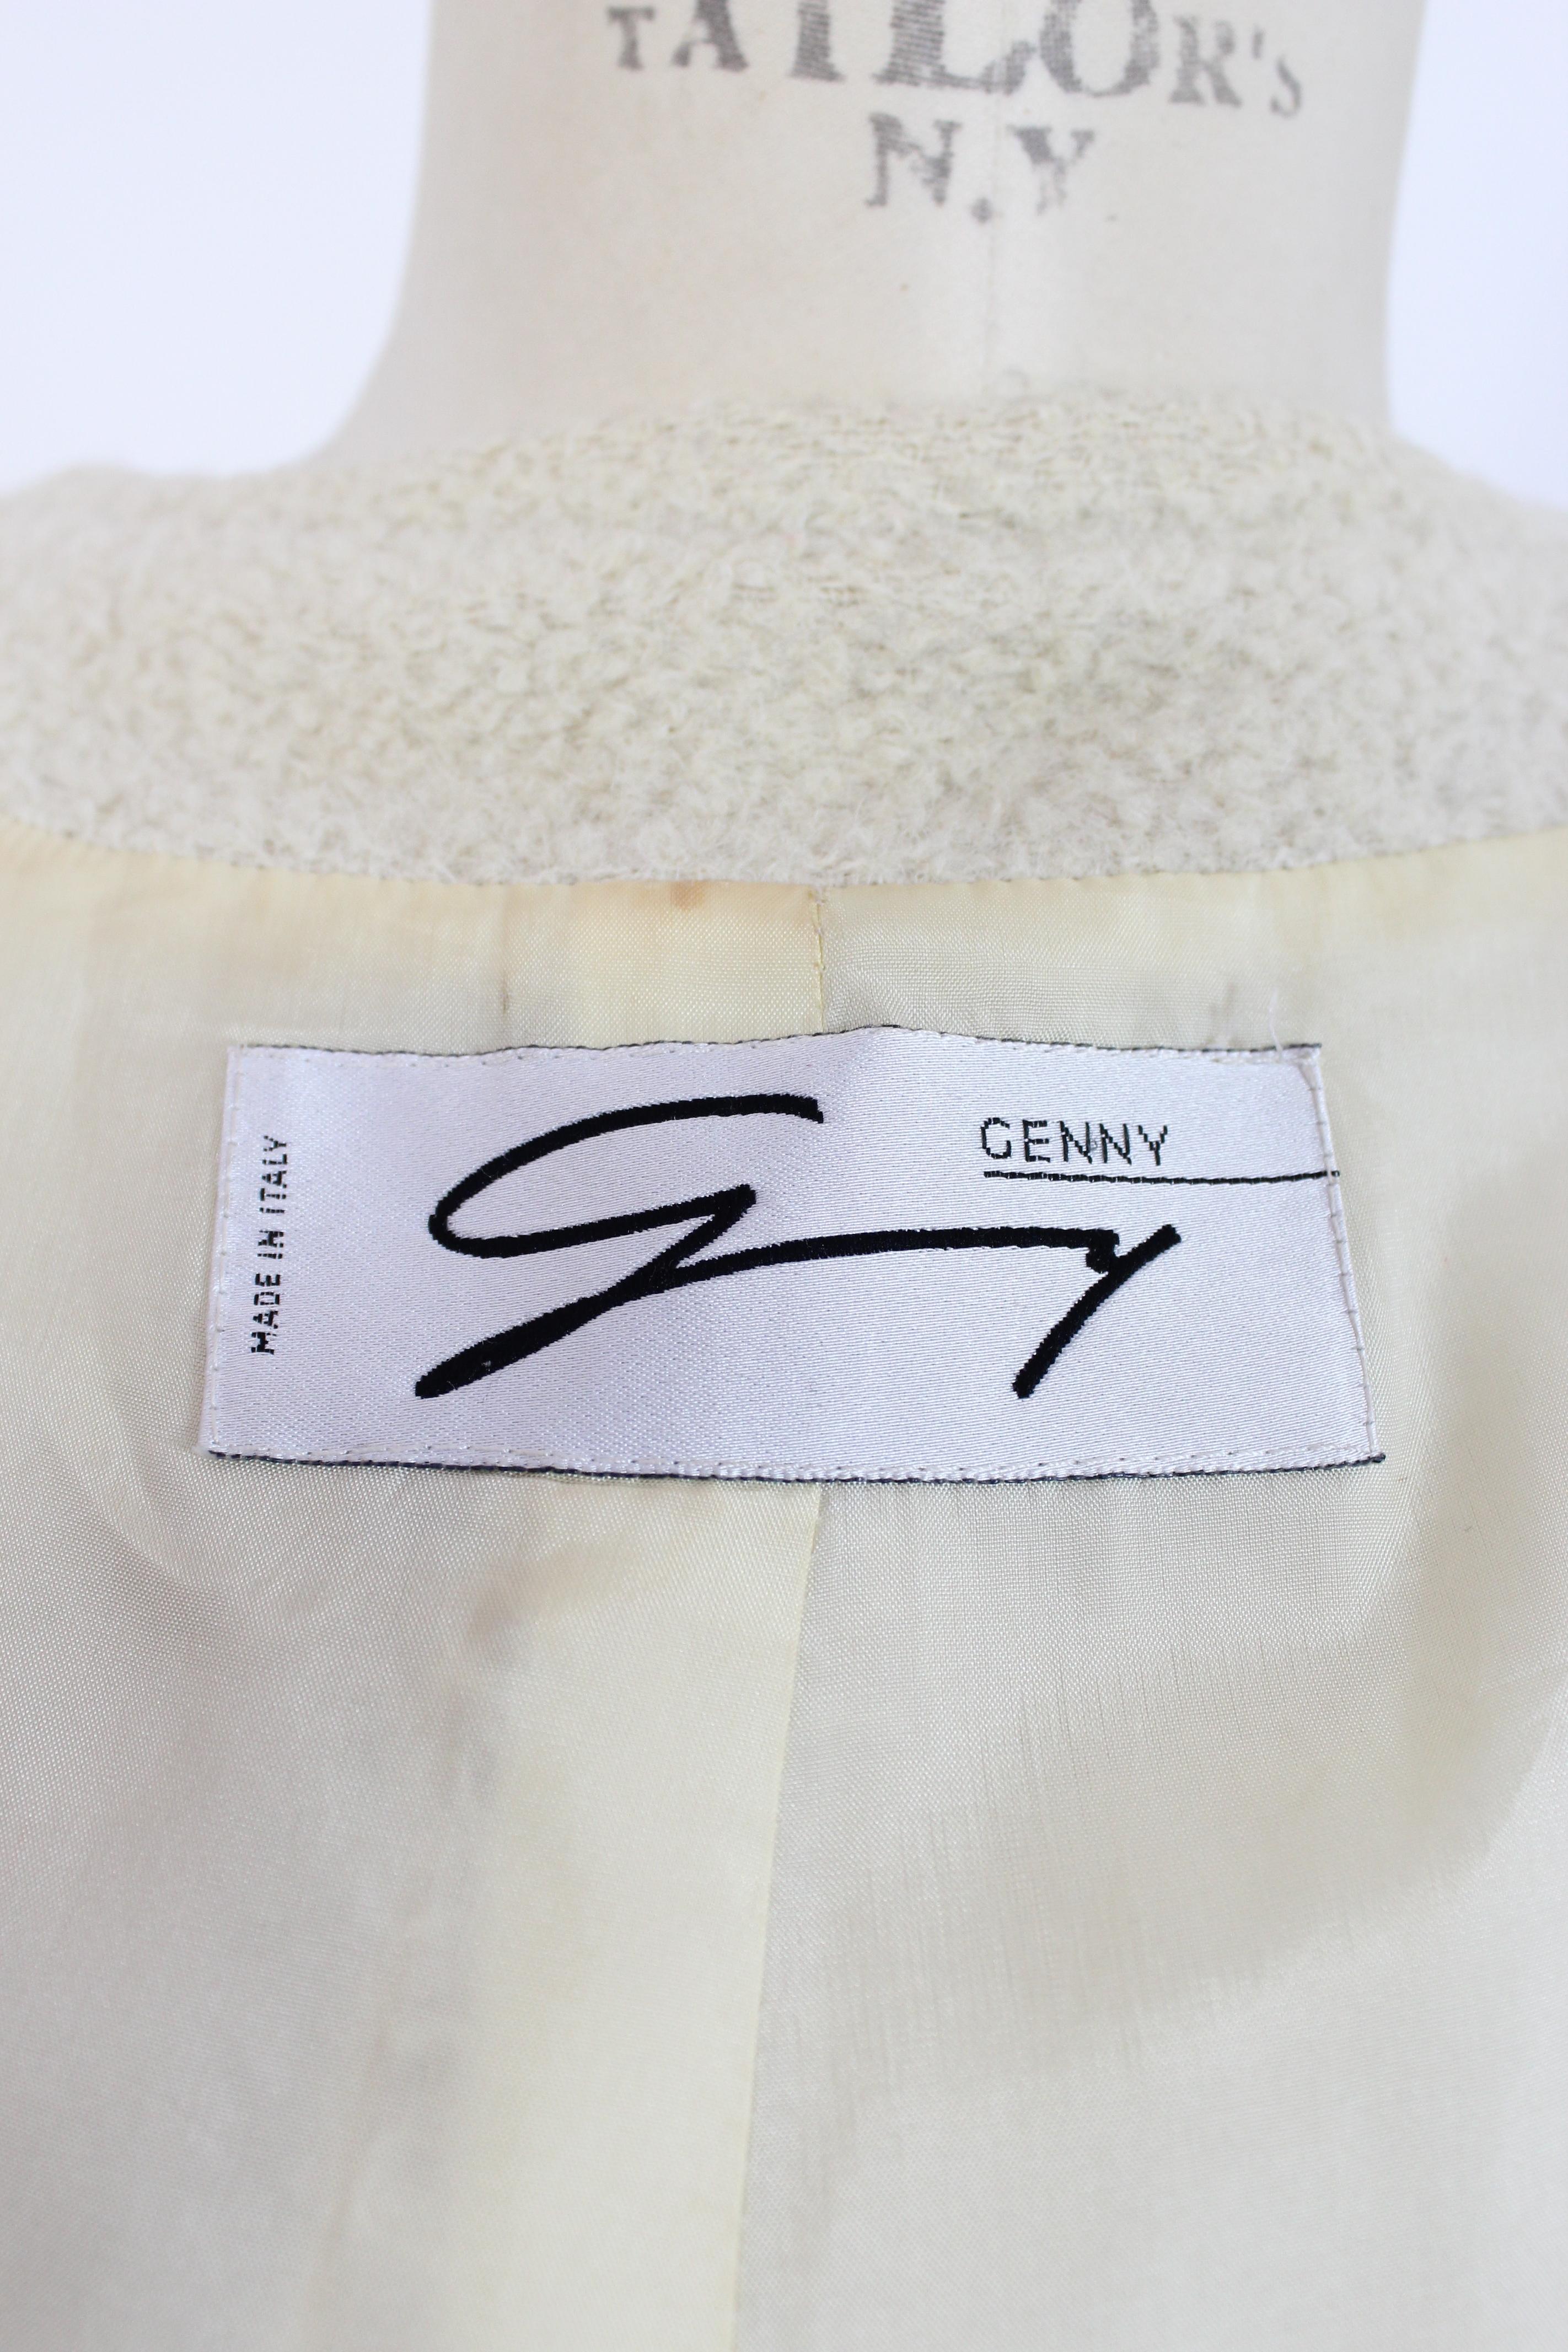 Genny Beige Alpaca Wool Boucle Coat 1980s 2